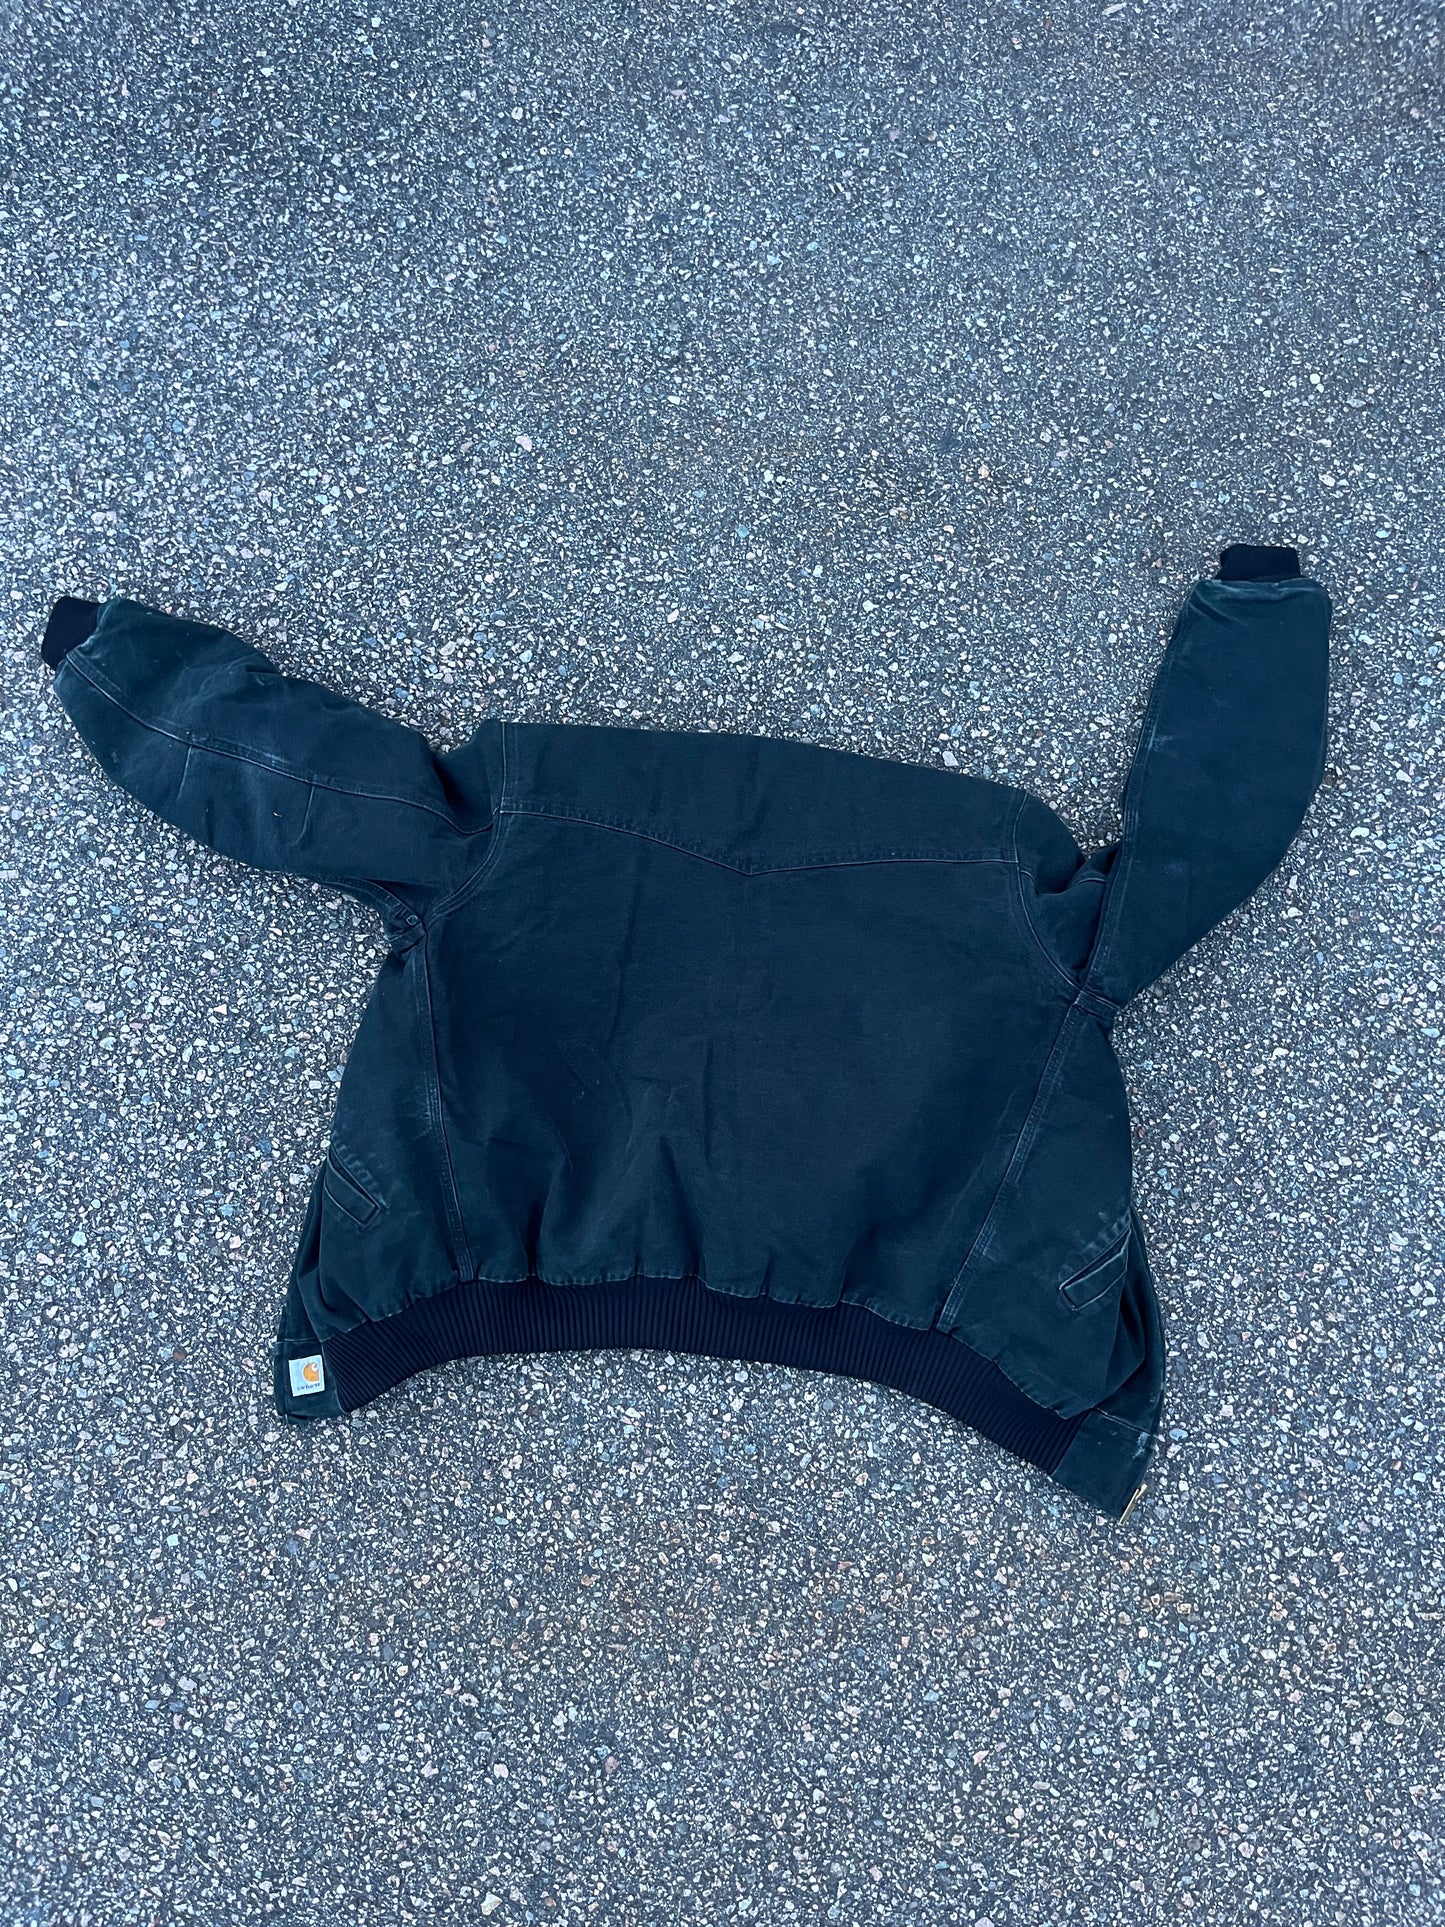 Faded Black Carhartt Santa Fe Jacket - Medium